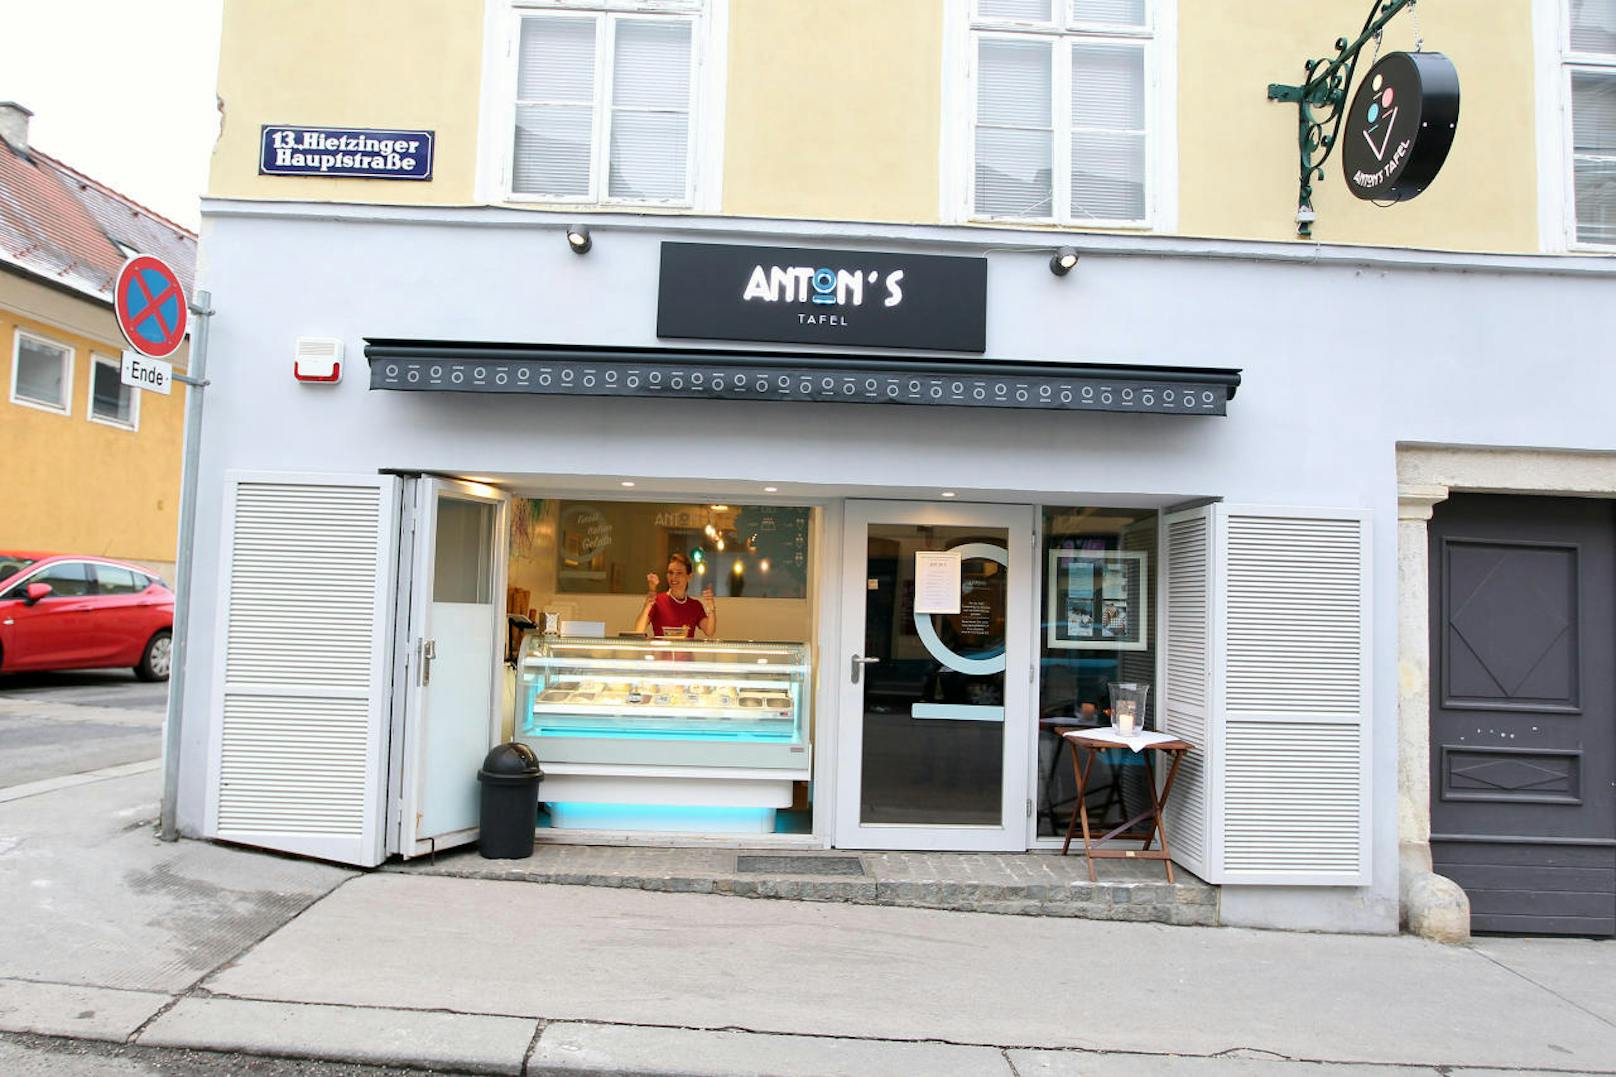 Der Eis-Salon mit dazugehörigem Restaurant befindet sich in der Hietzinger Hauptstraße 174.